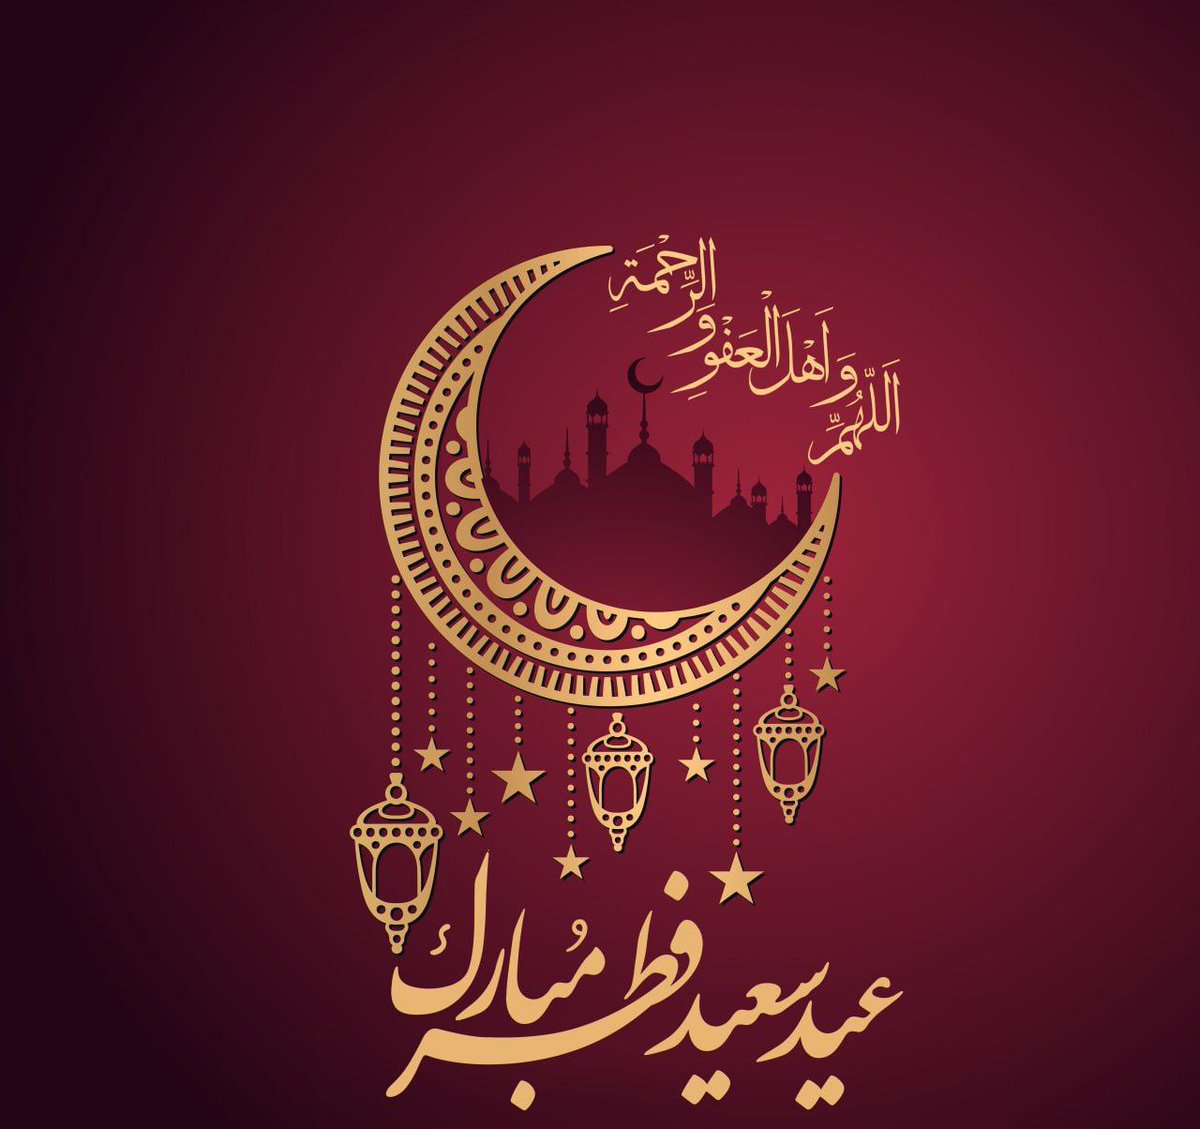 🌹عید سعید فطر مبارک باد 🌹 Happy Eid al-Fitr #عيد_الفطر_المبارك